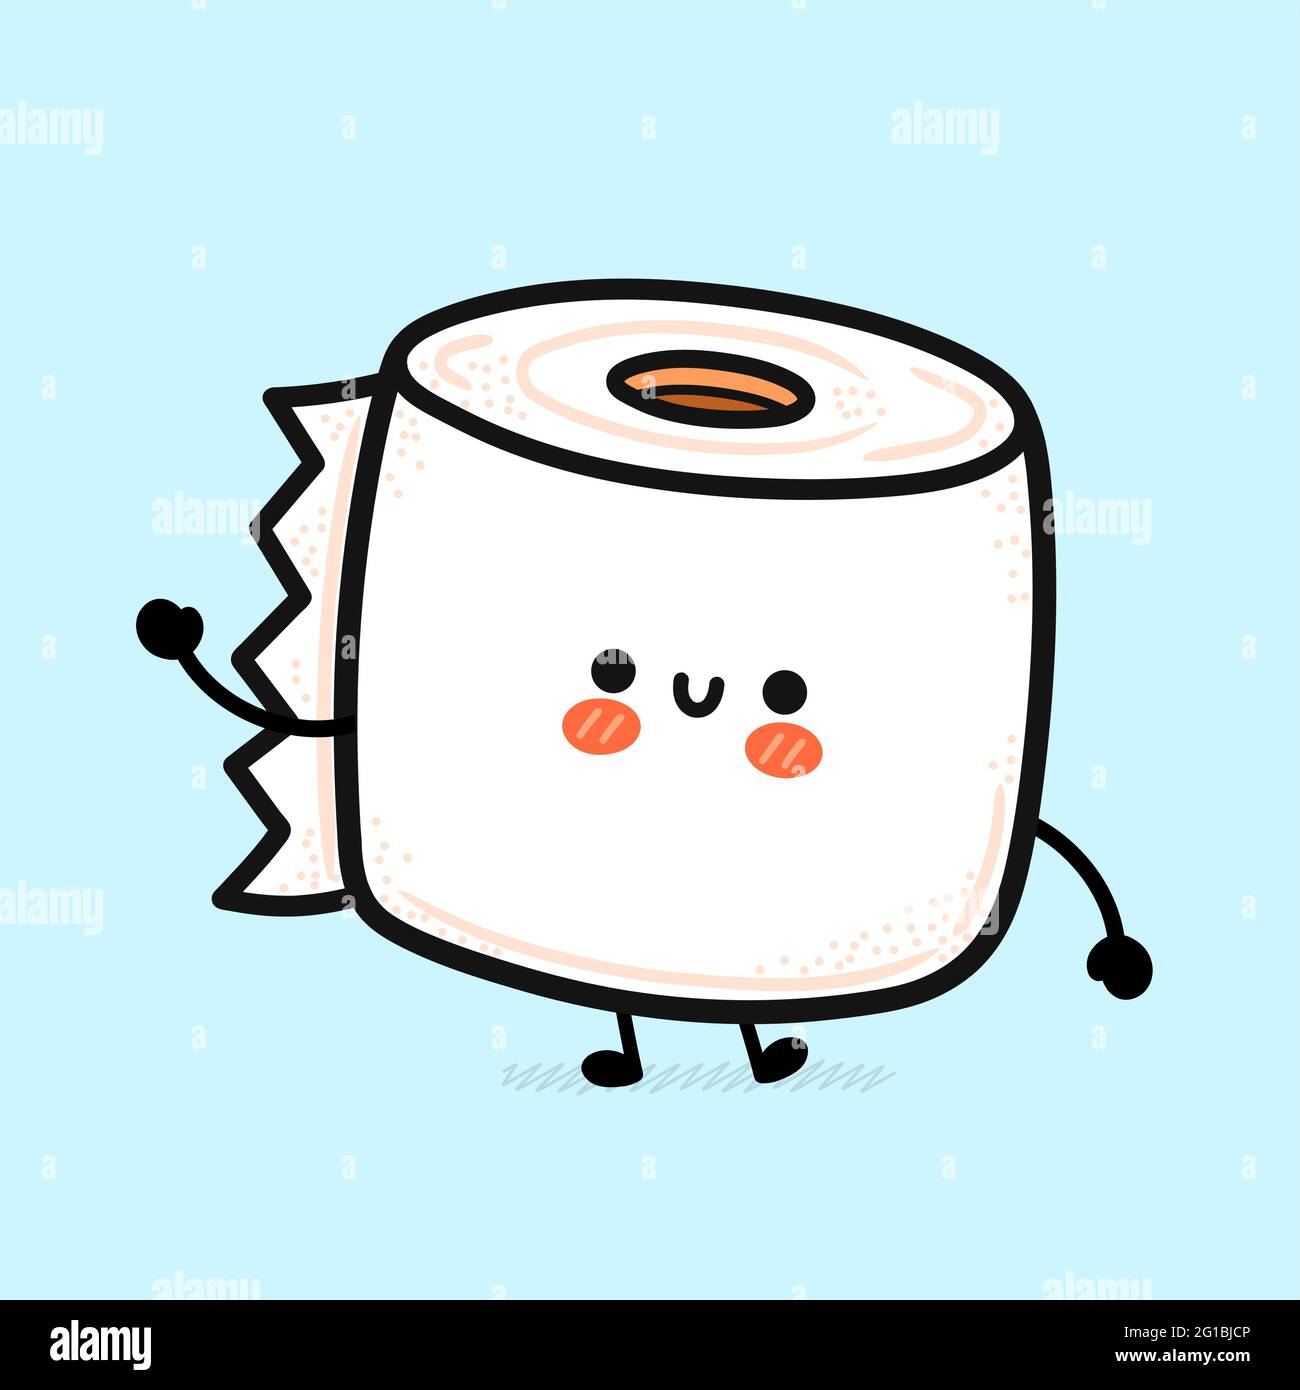 Rouleau de papier toilette blanc mignon et amusant. Icône d'illustration de  personnage de dessin animé à la main de vecteur kawaii. Drôle de dessin  animé papier toilette mascotte concept de personnage Image